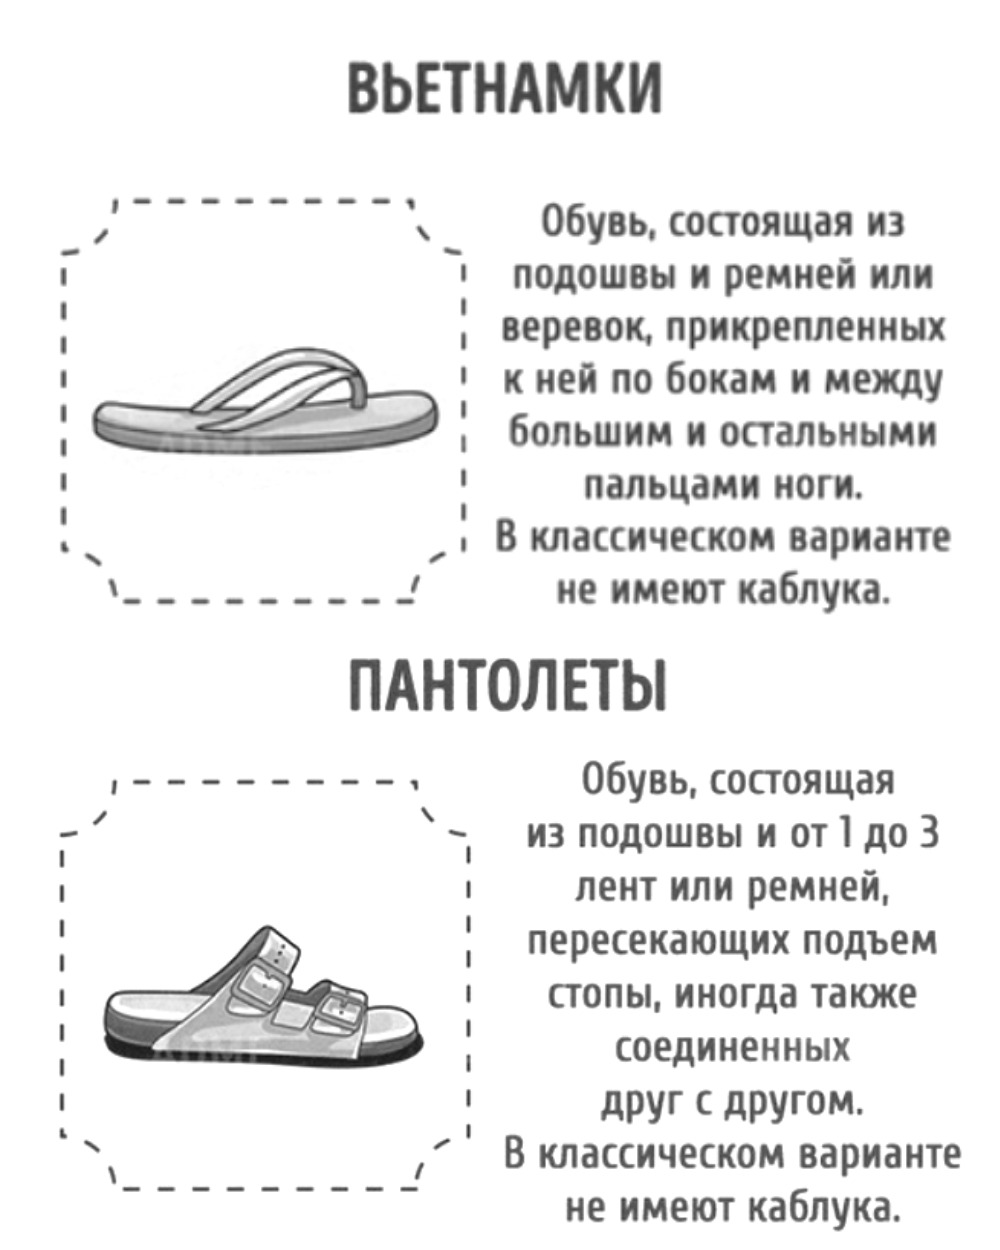 Виды женской обуви